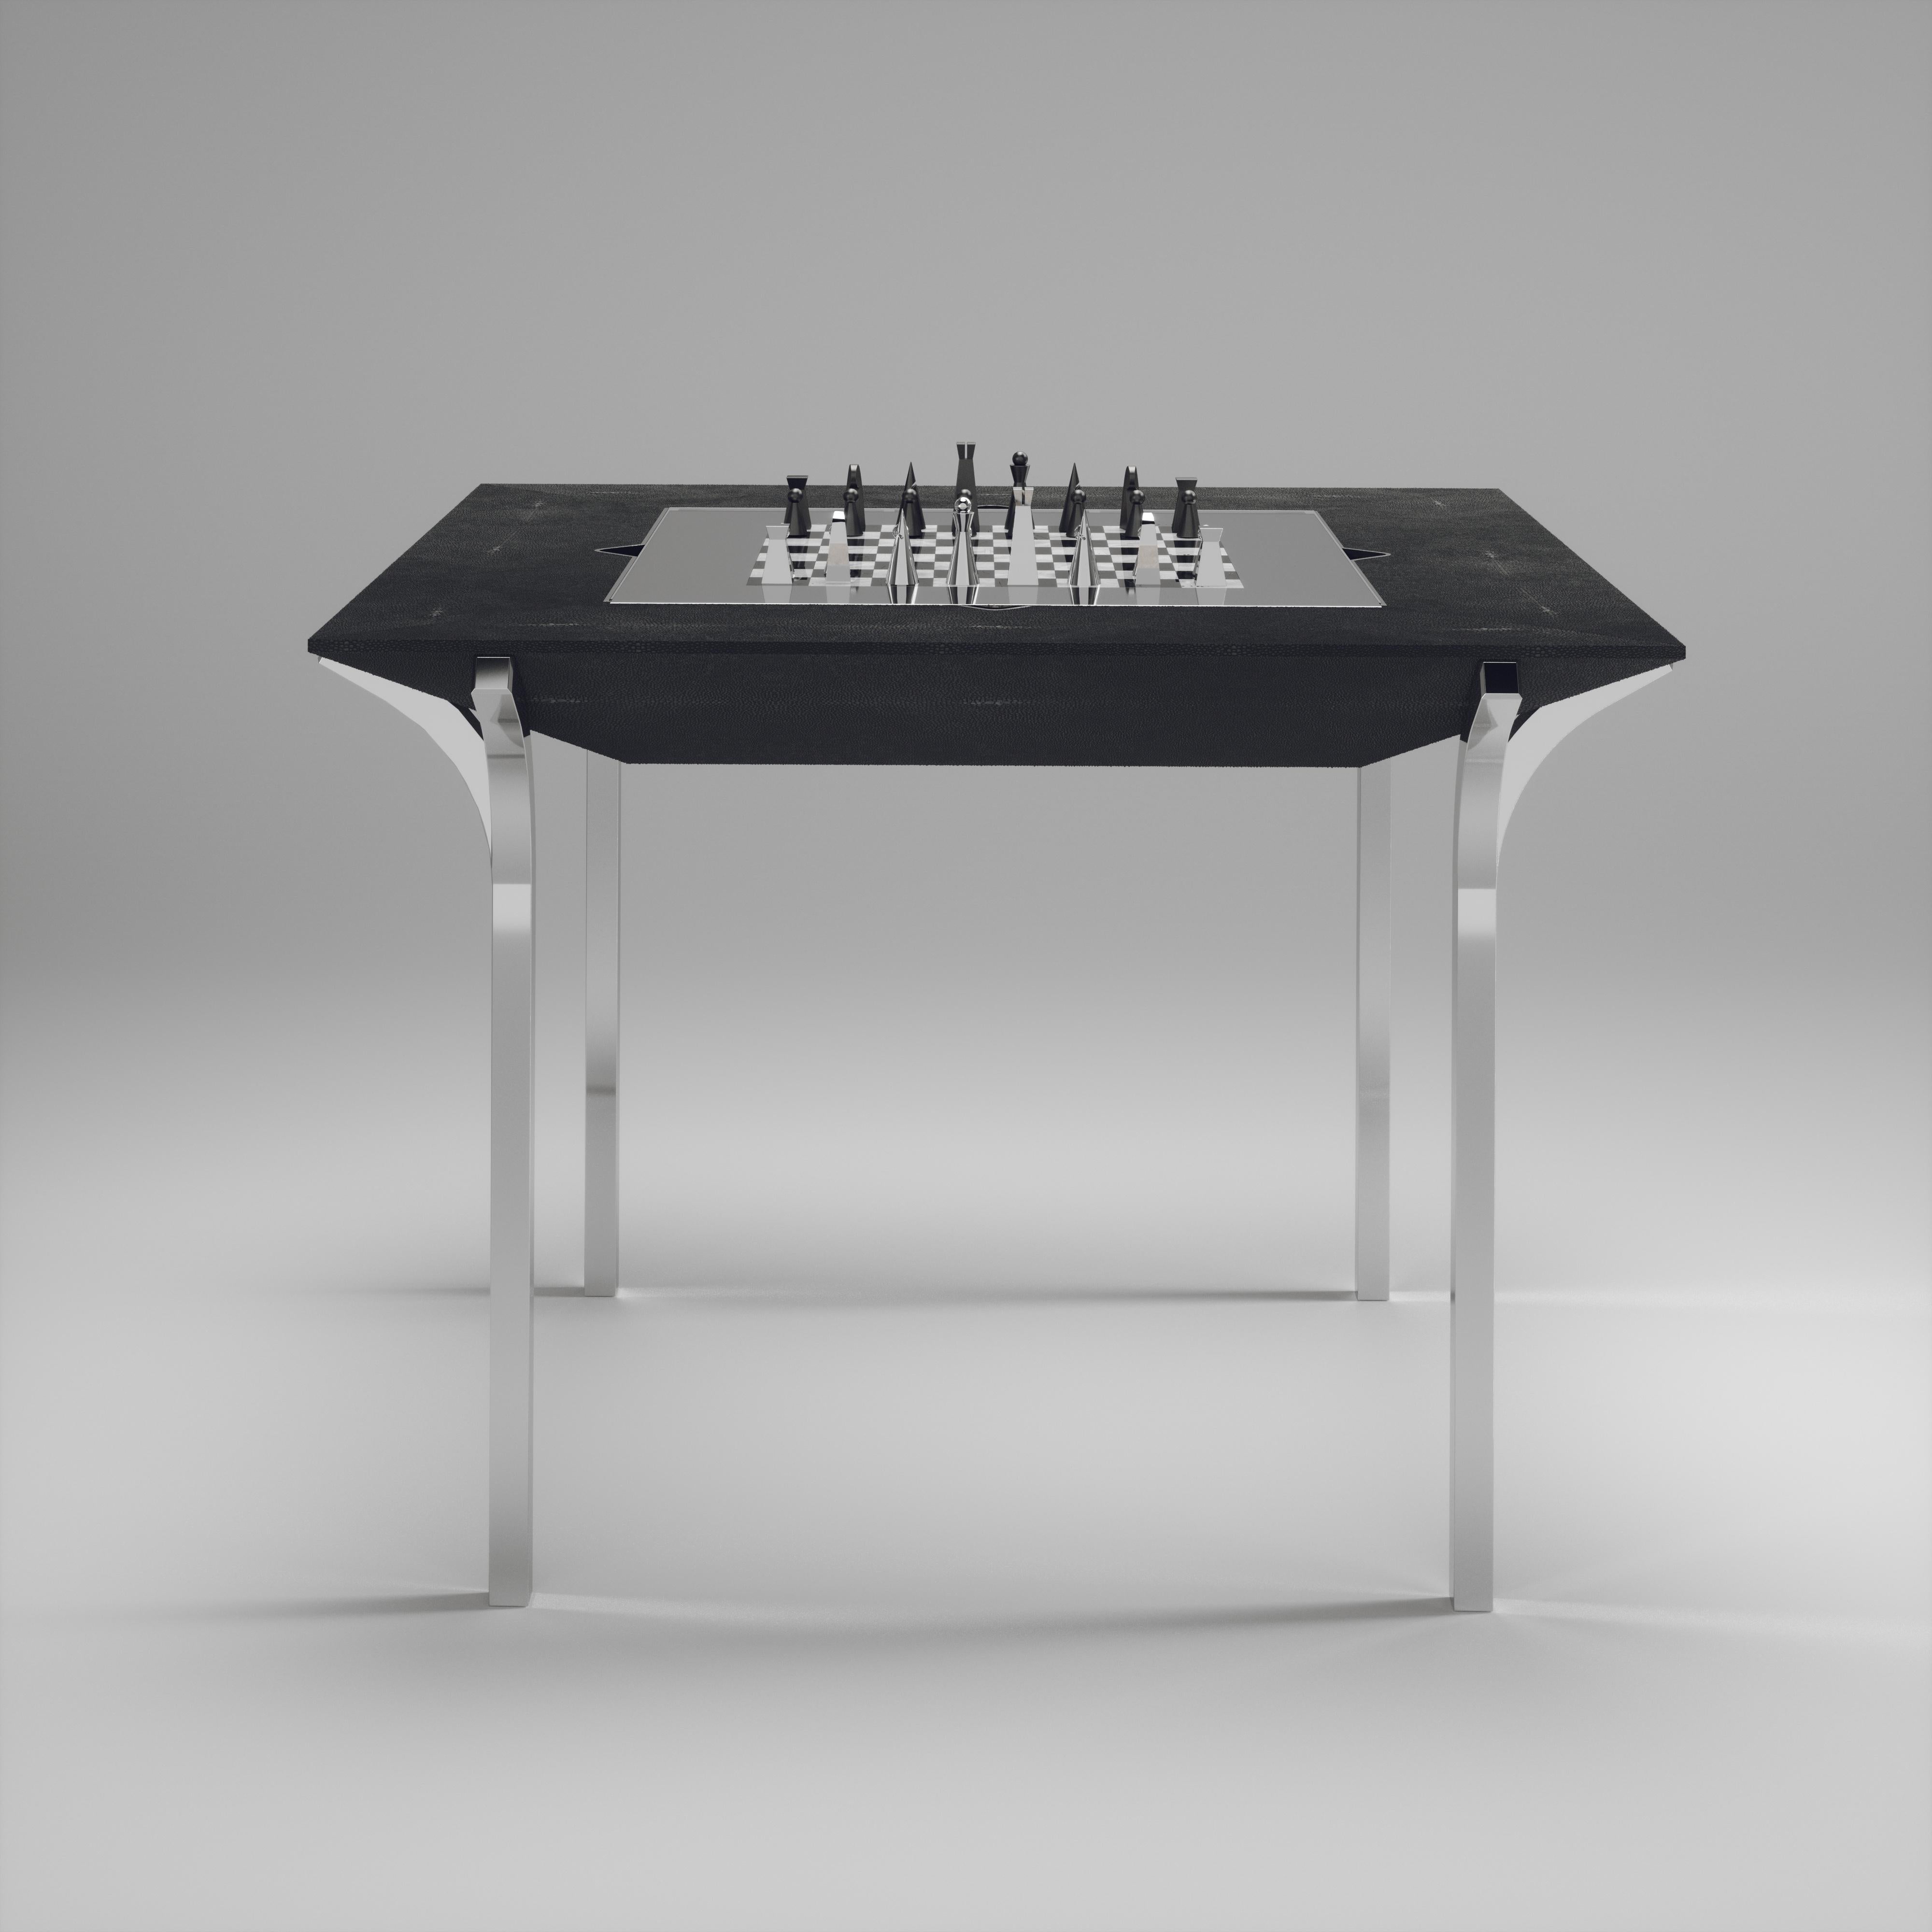 La table de jeu 4 en 1 Marcel R&Y Augousti est une pièce de luxe pour votre maison. Les lignes épurées de l'ensemble de la pièce en galuchat noir charbon, accentuées par les pieds sculpturaux et élégants en acier inoxydable poli finition chrome, la